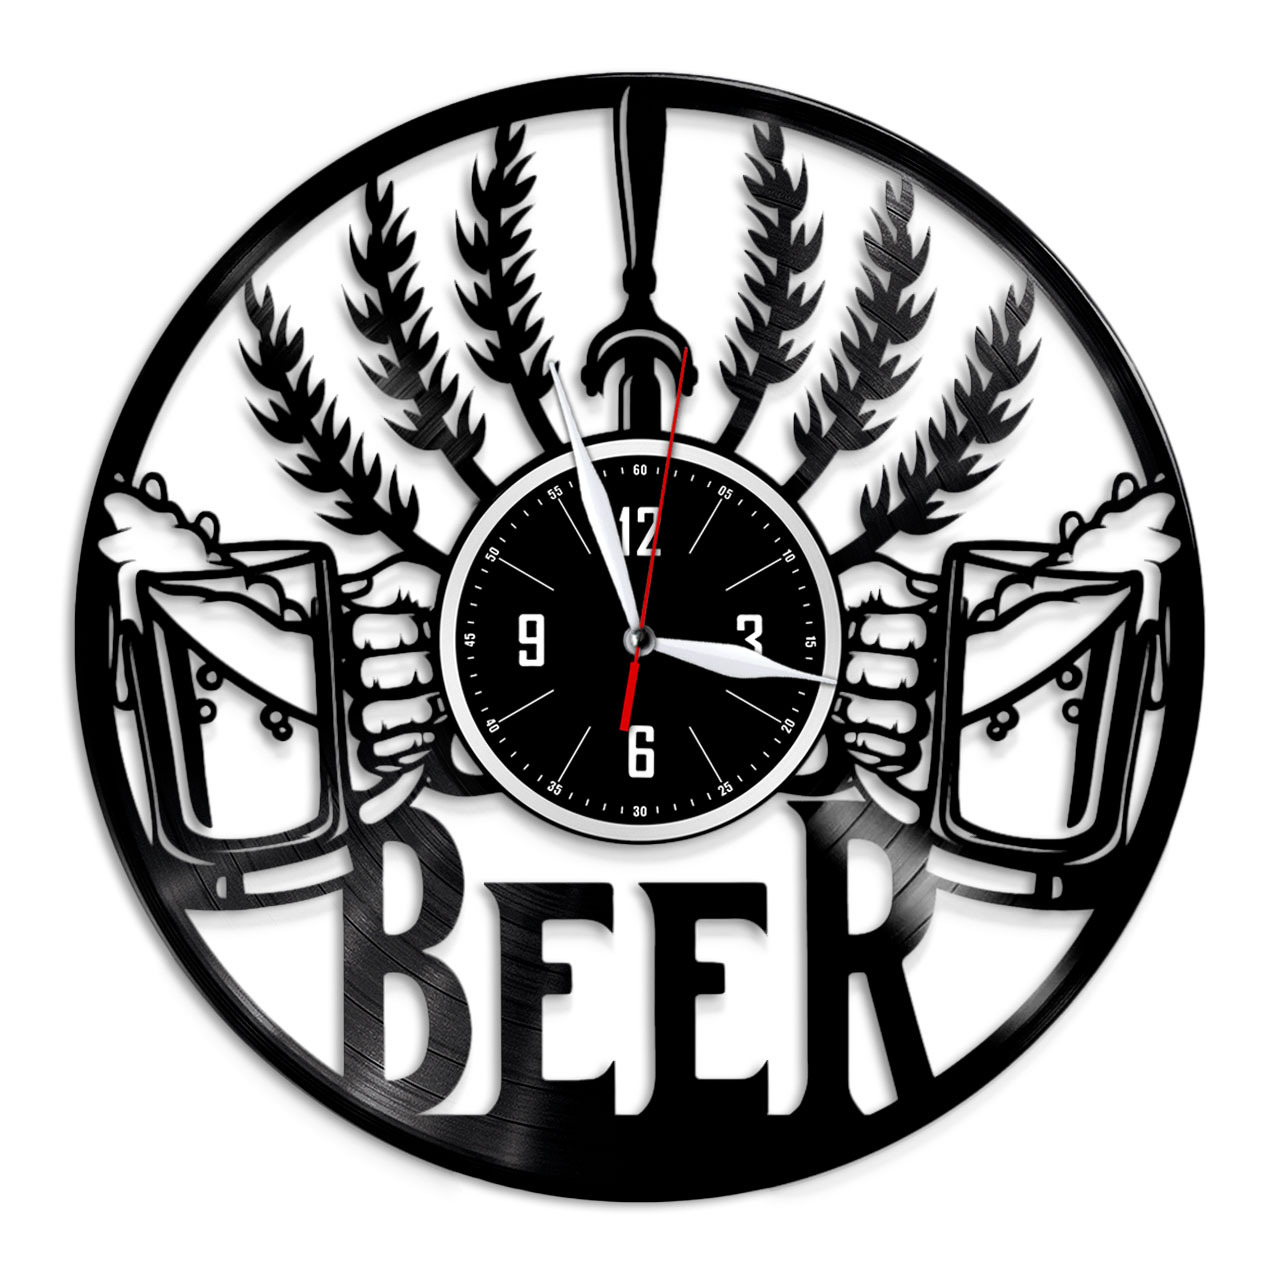 Пивные часы. Часы настенные пиво. Часы для пивной настенные. Часы настенные пивная тематика. Часы с пивом.